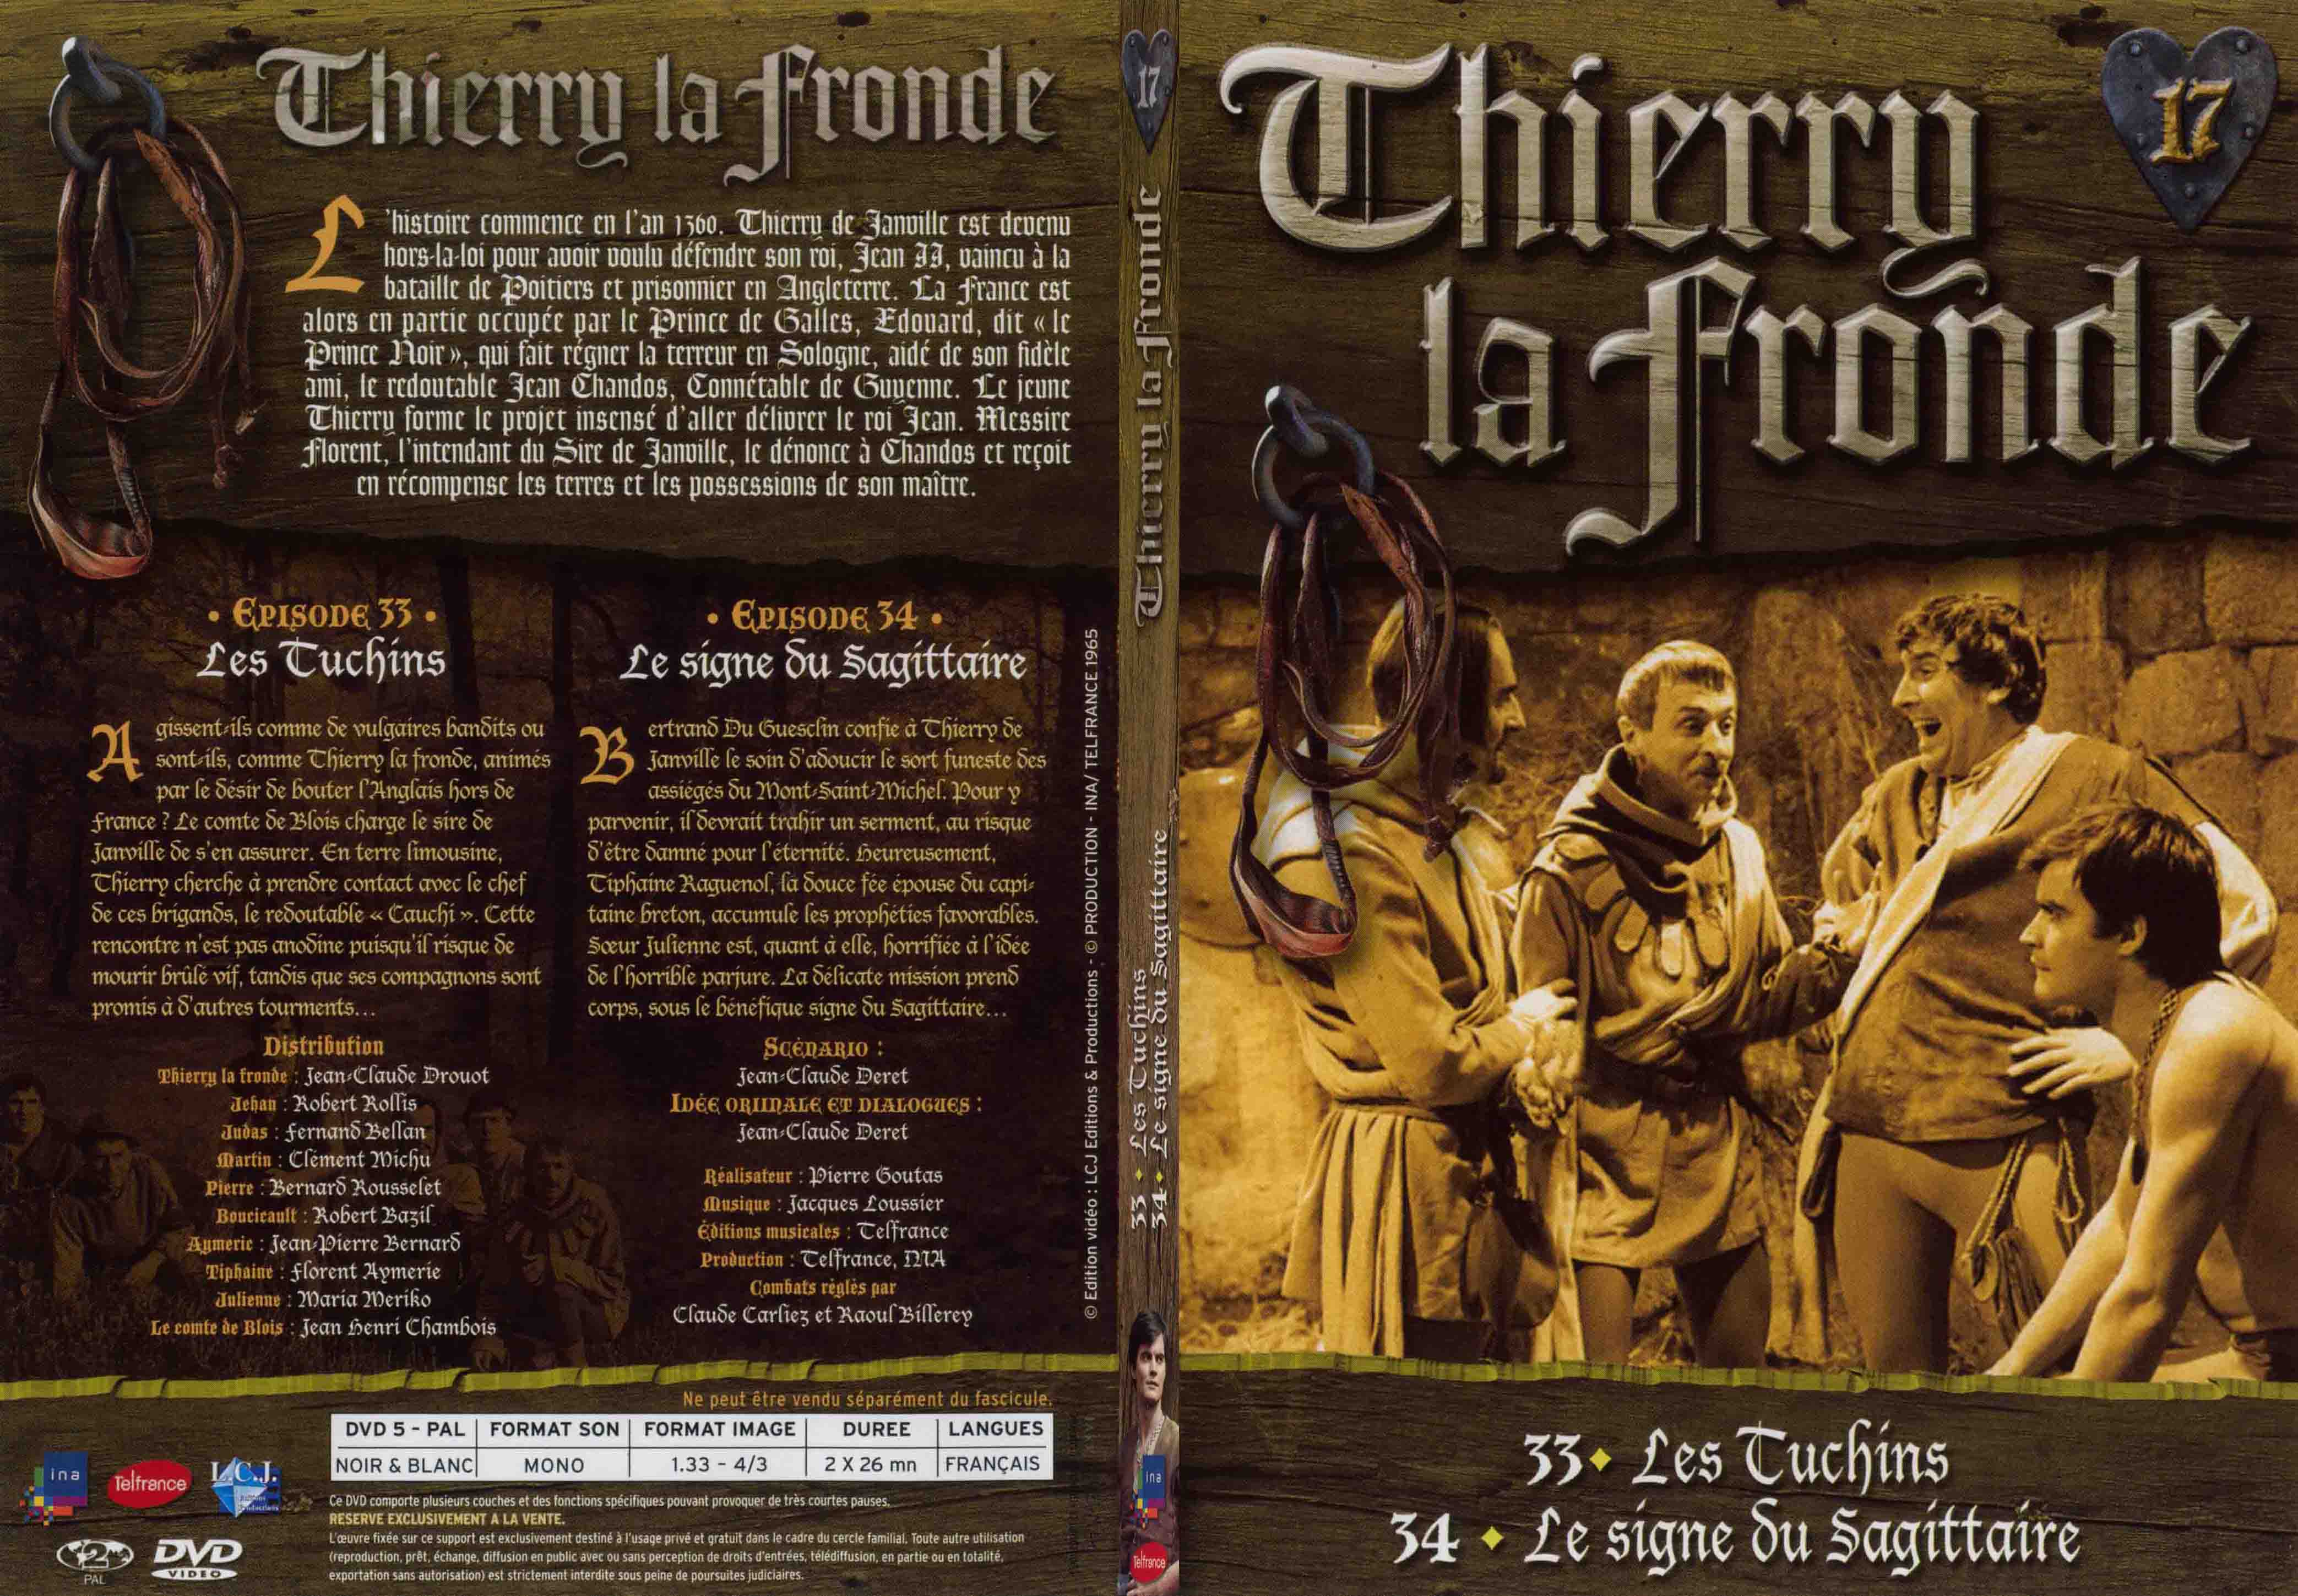 Jaquette DVD Thierry la Fronde vol 17 - SLIM